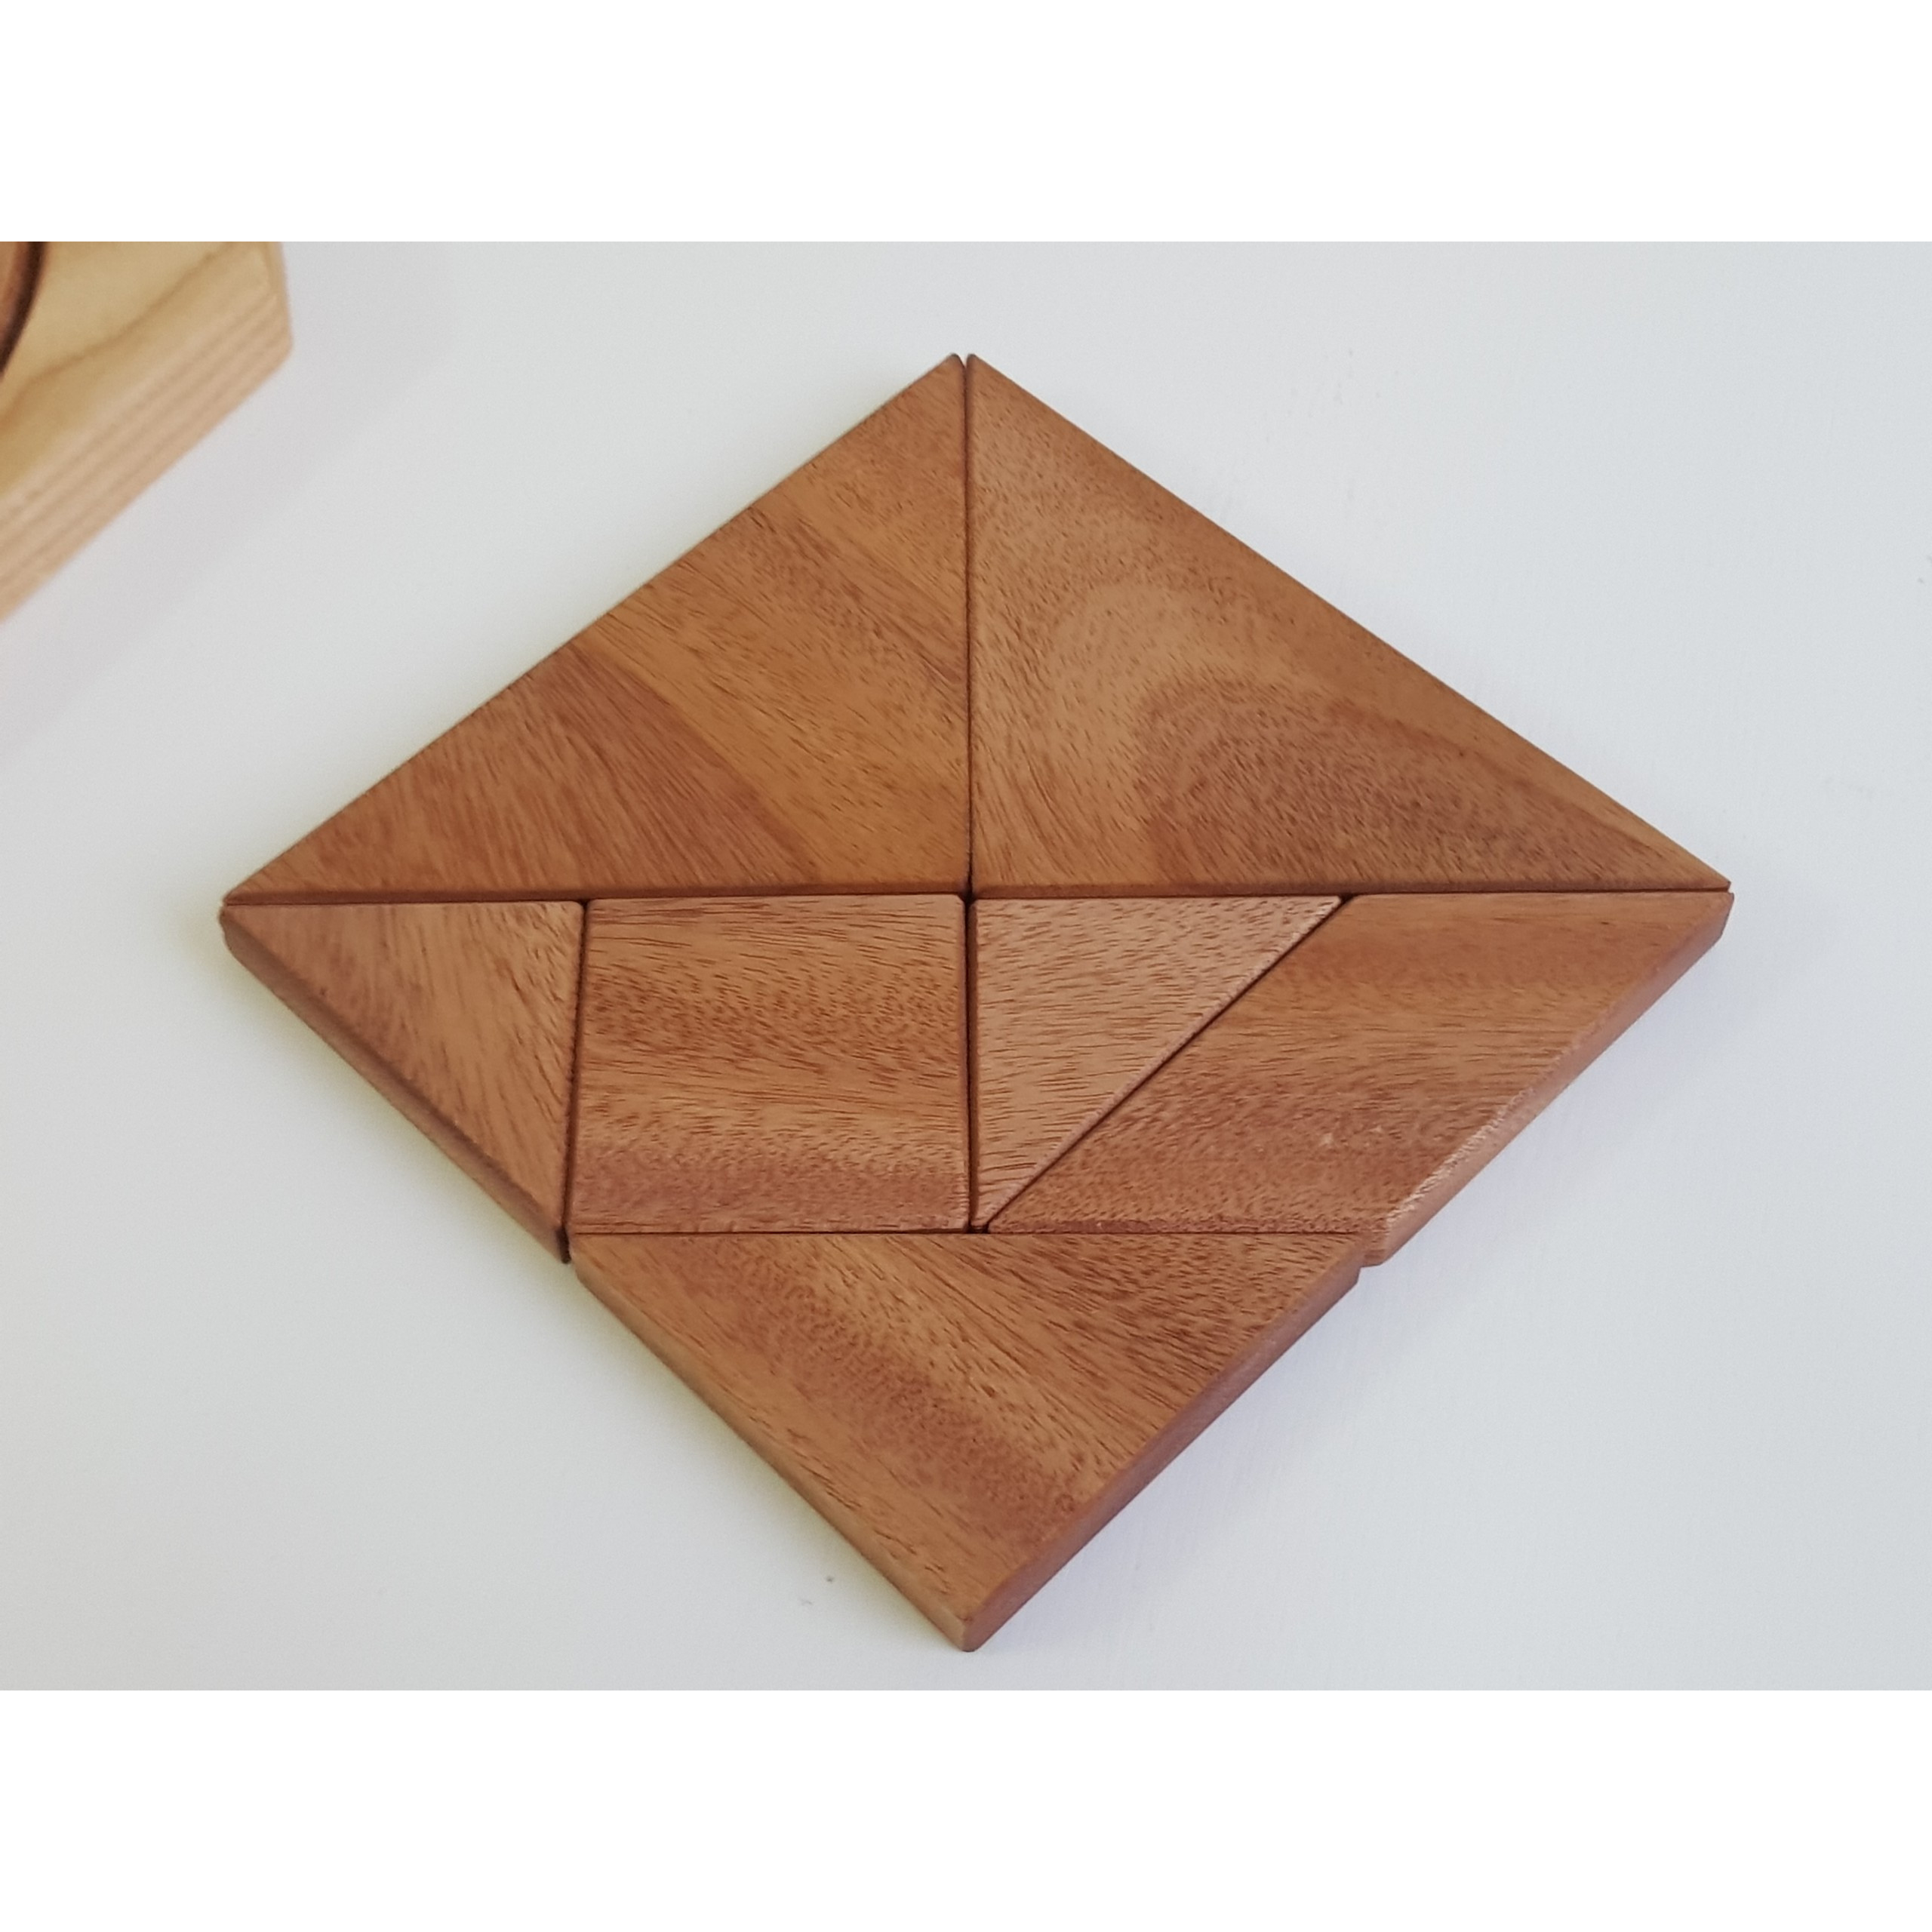 [Puzzle - Smart toy] Bộ xếp hình gỗ rèn luyện khả năng tưởng tượng và sáng tạo - Trí Uẩn - hình vuông 7 mảnh/ Square tangram 7 pieces (Đồ chơi gỗ)